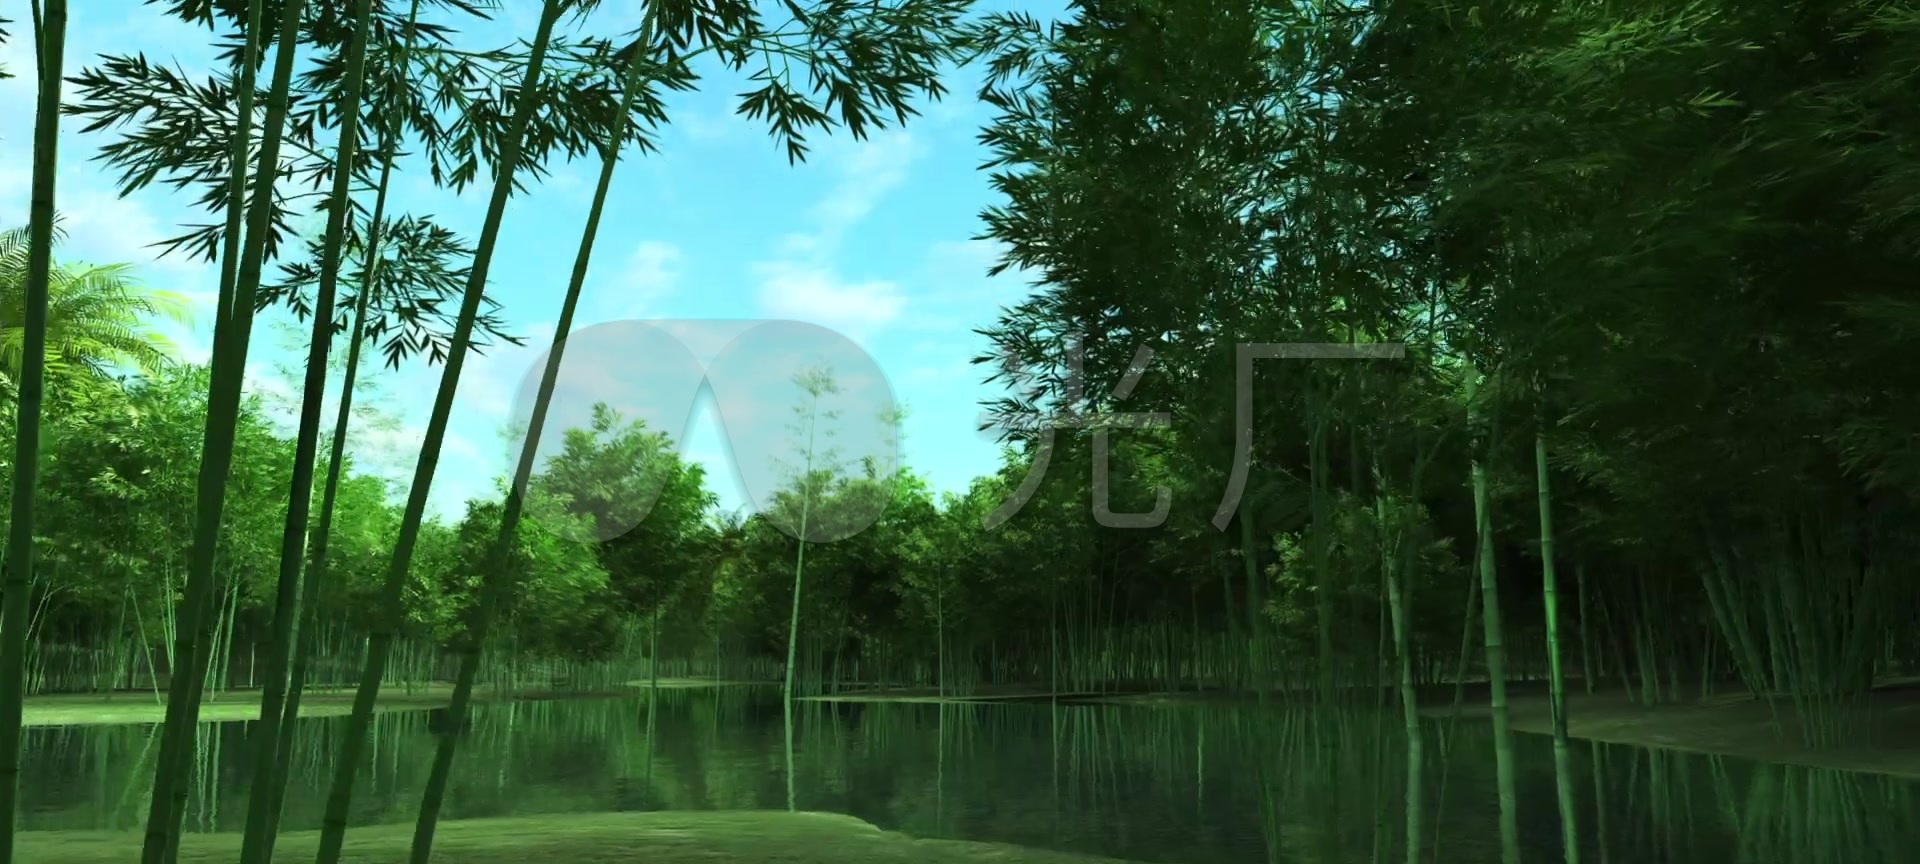 竹林自然背景 免费图片 - Public Domain Pictures